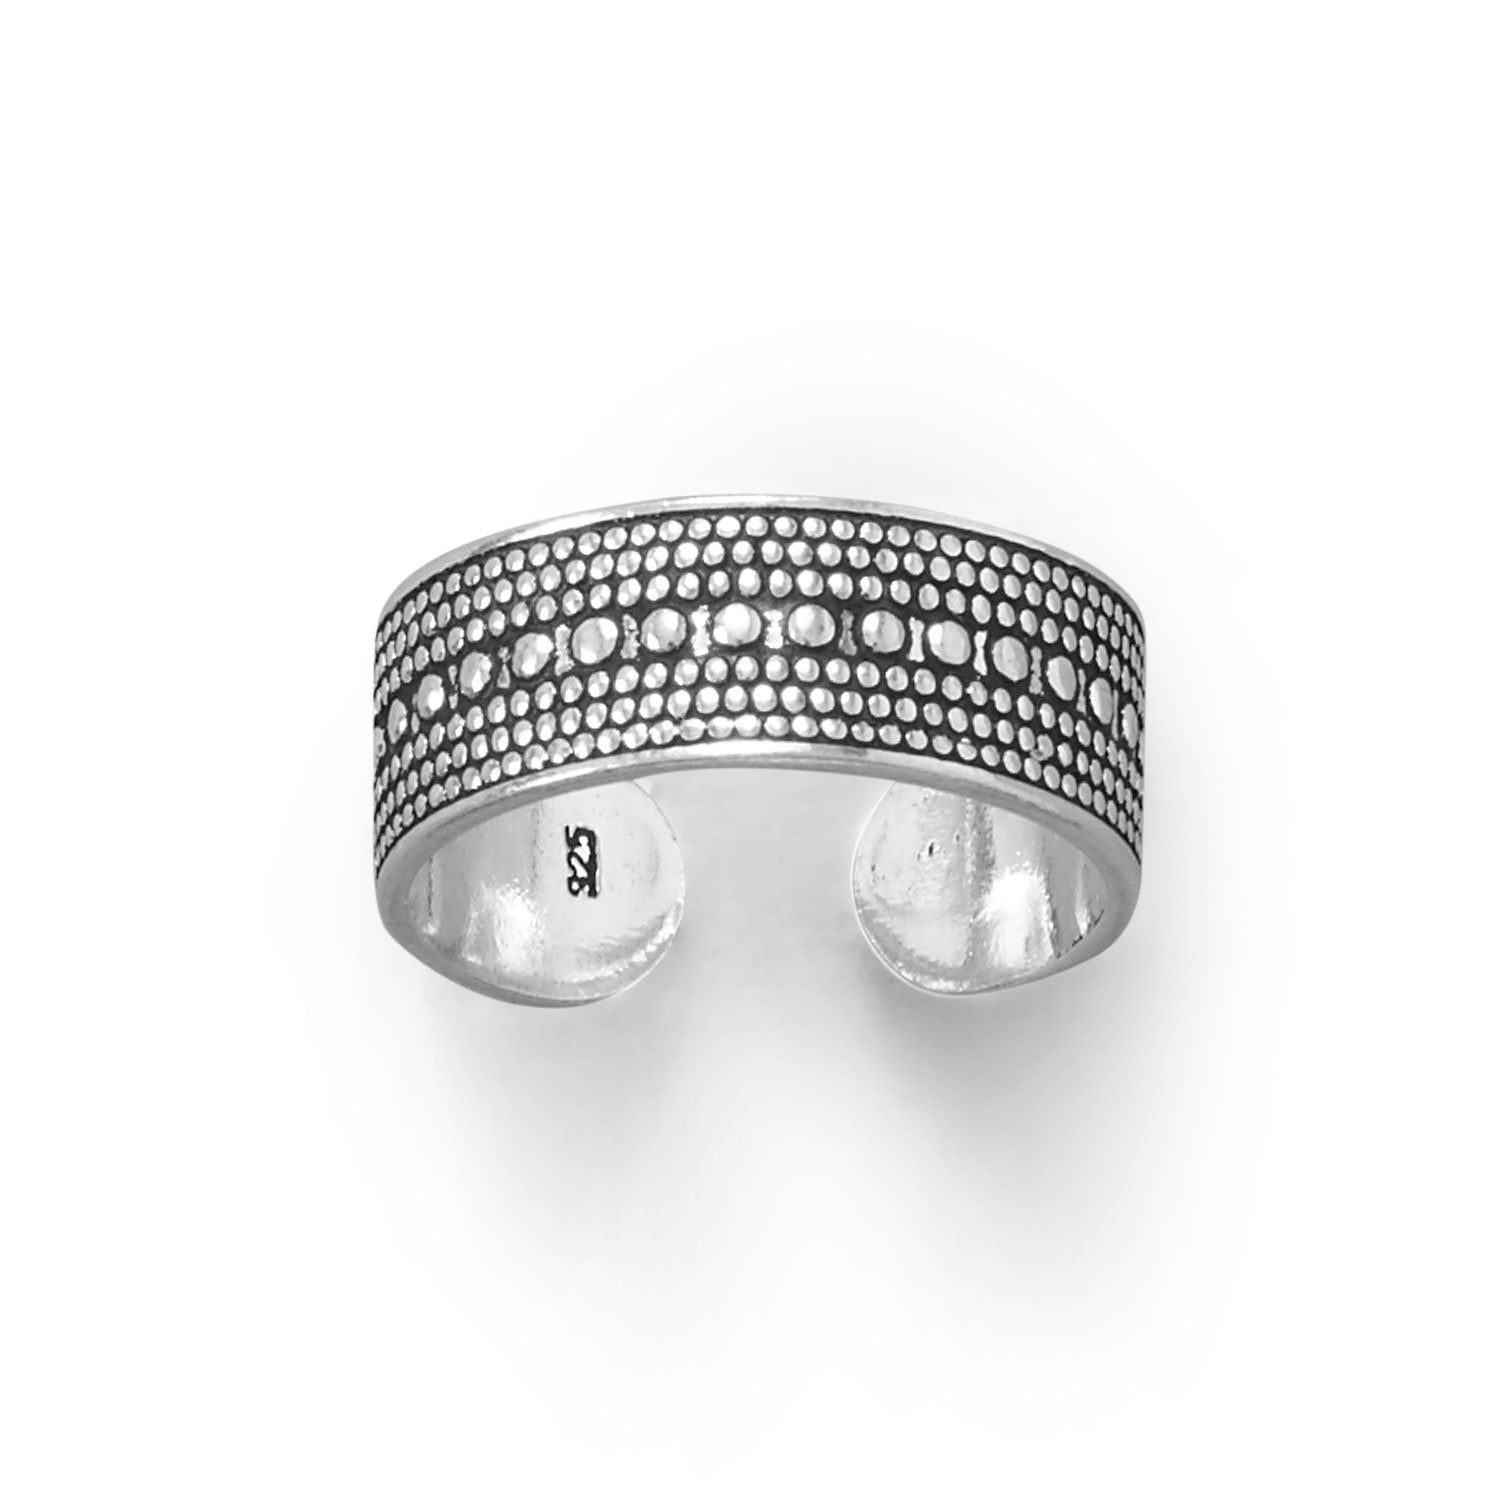 Oxidized Bead Design Toe Ring - Joyeria Lady